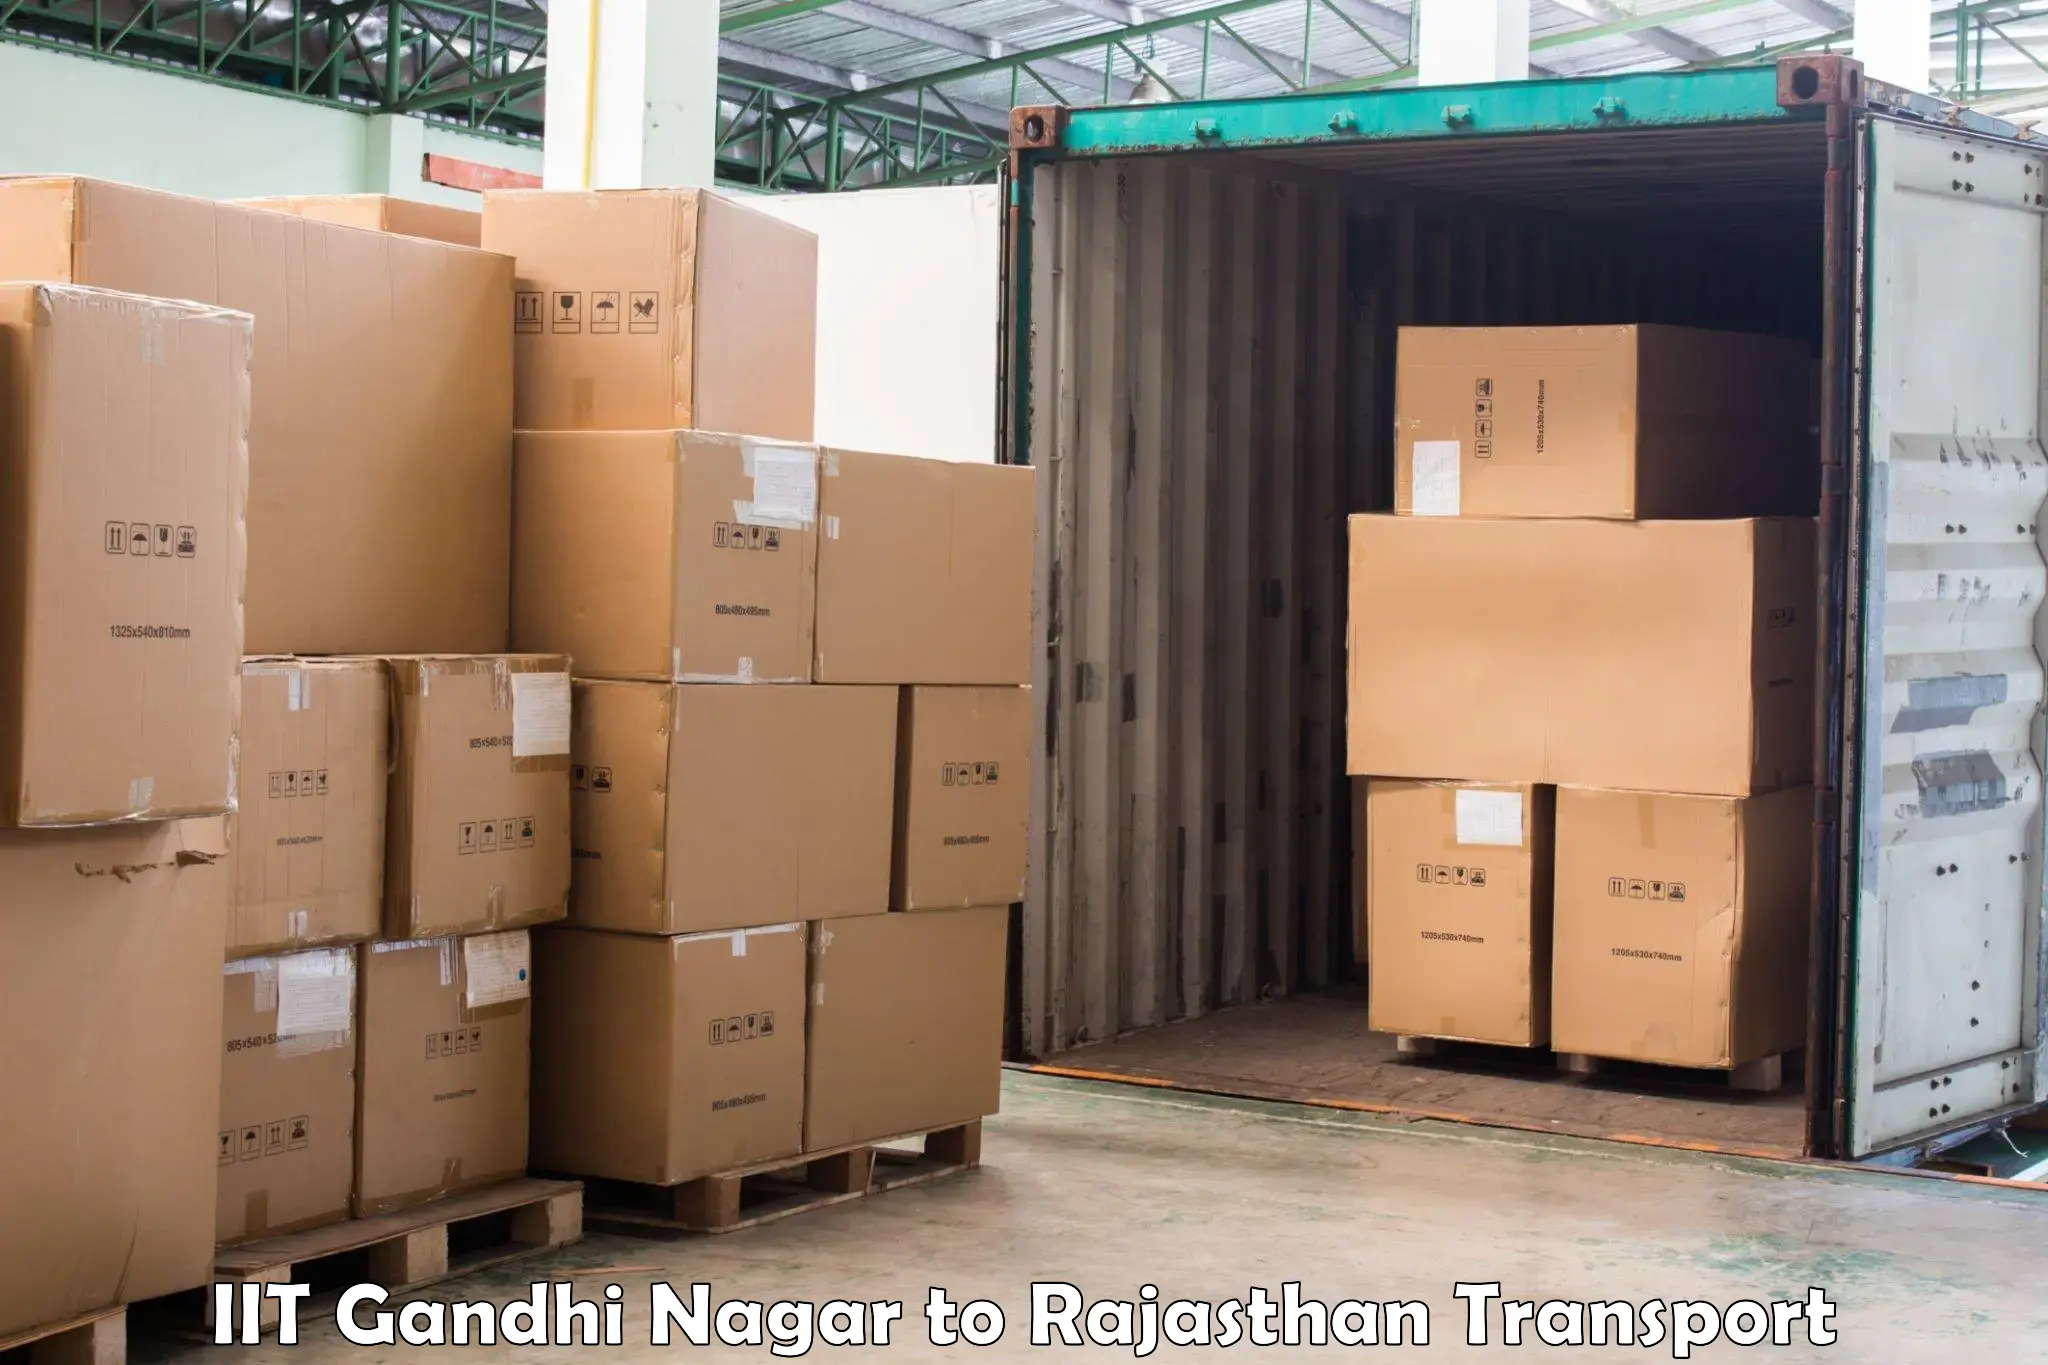 Interstate transport services IIT Gandhi Nagar to Dudu